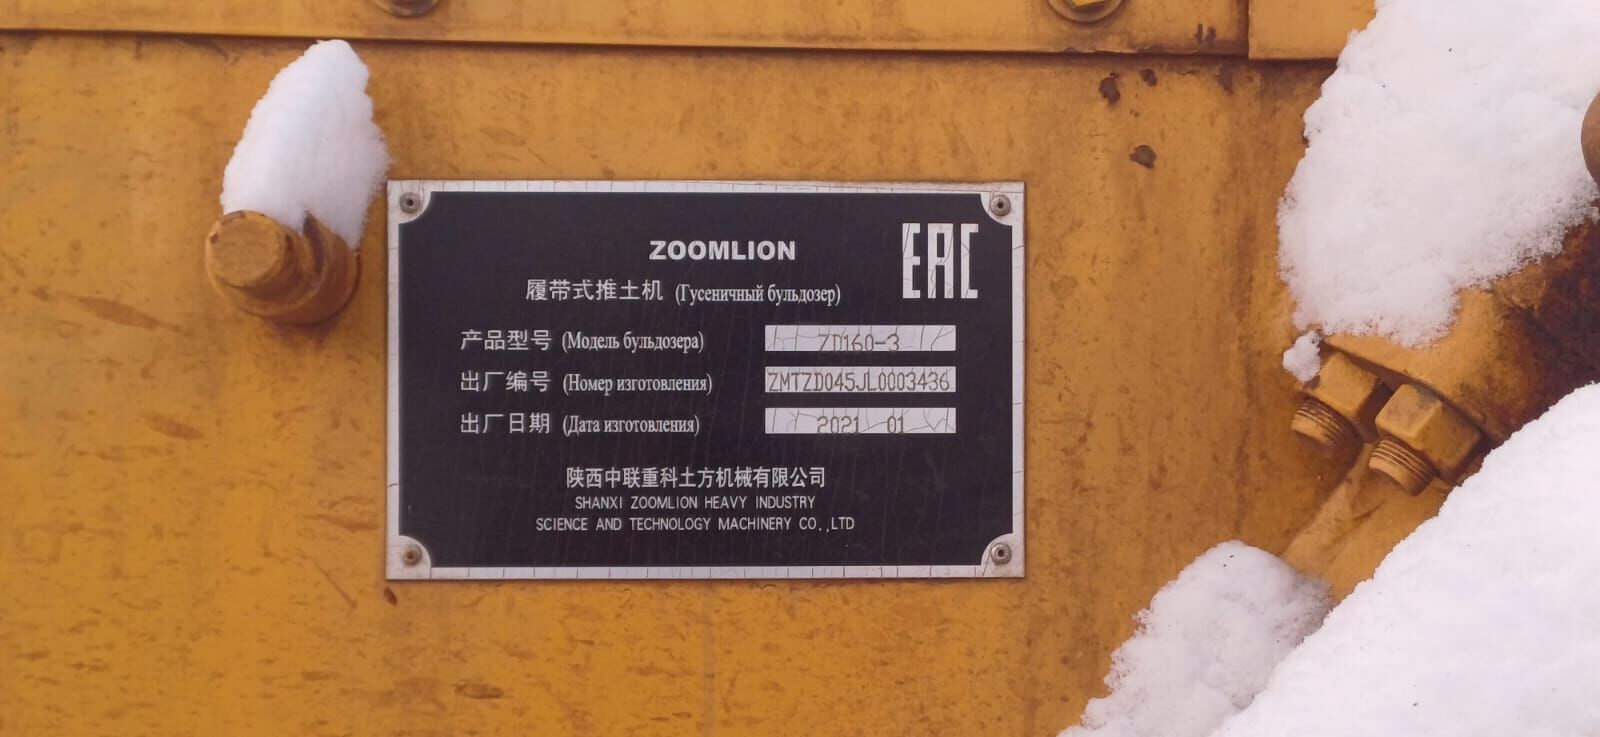 Бульдозер гусеничный ZOOMLION ZD160-3 б/у (2021 г.в., 4277 м.ч.)